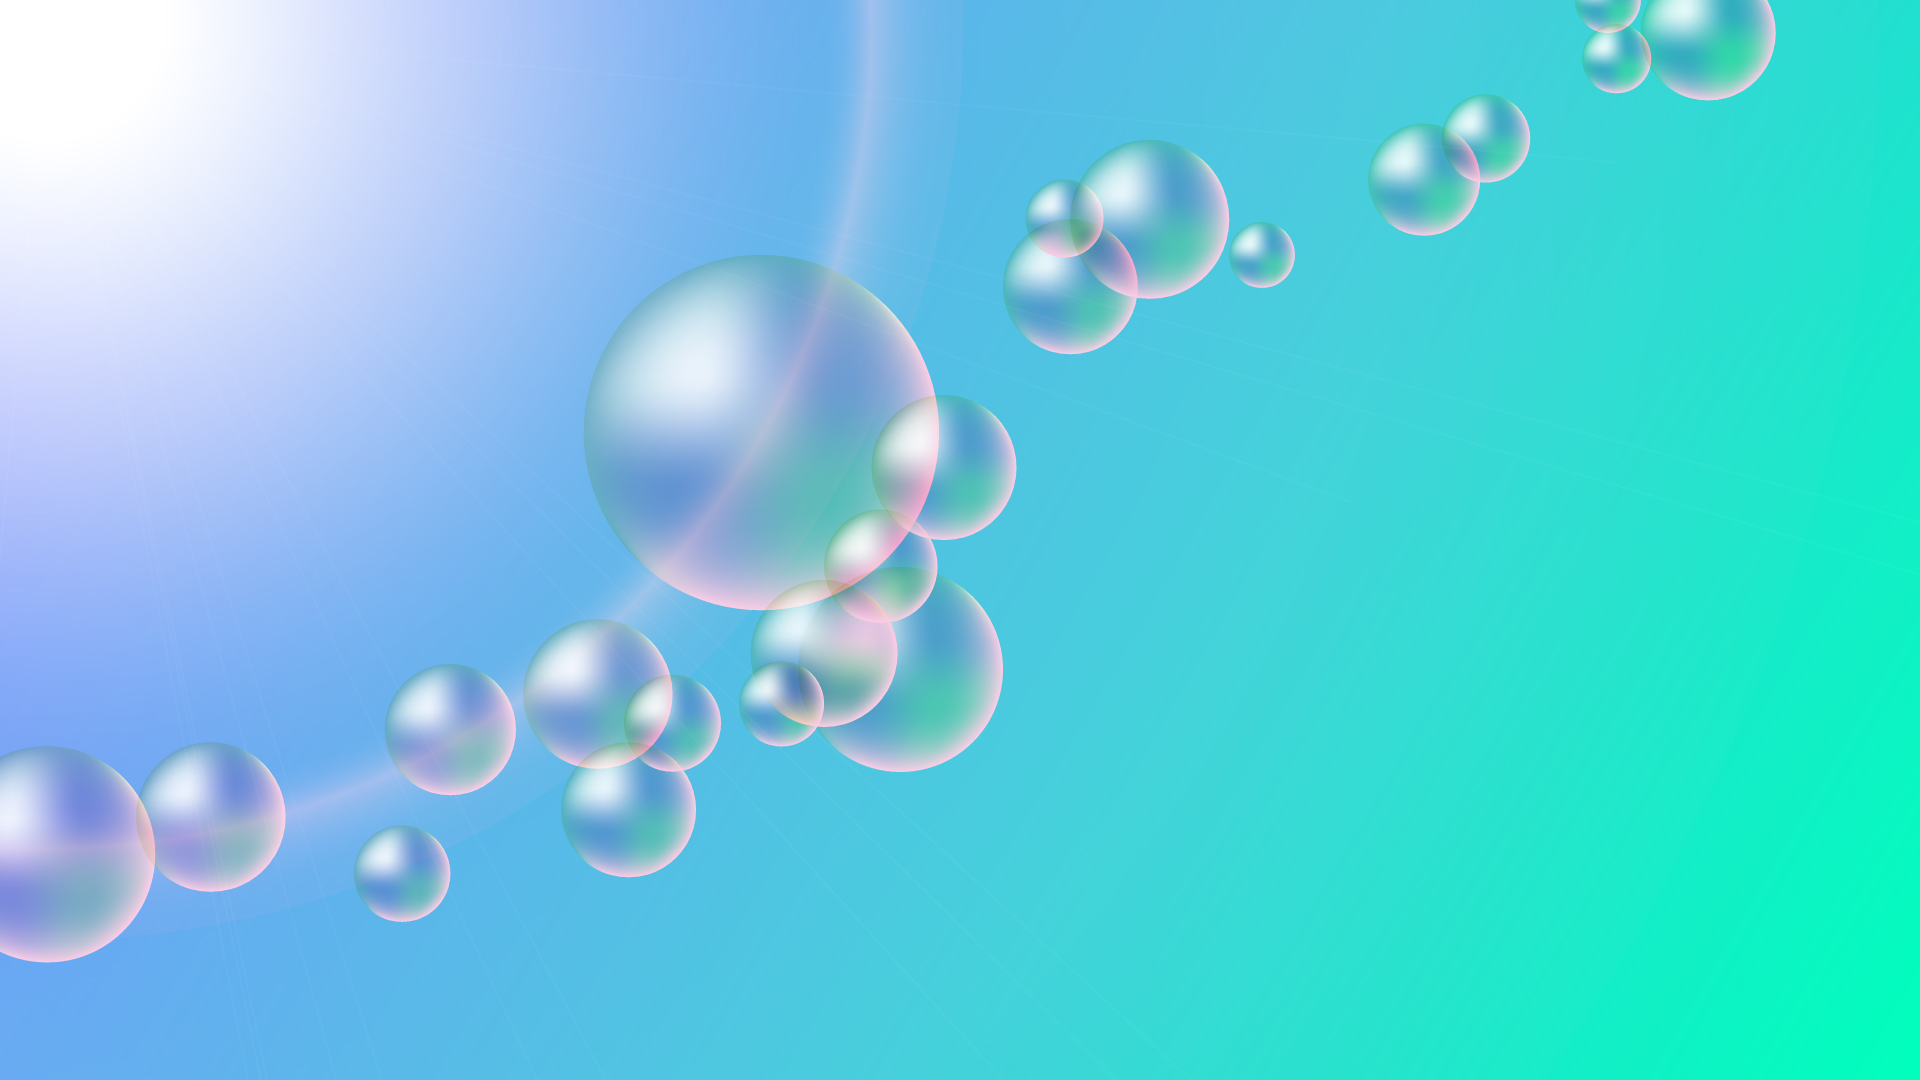 シャボン玉・バブルの壁紙・背景素材 1,920px×1,080px 02